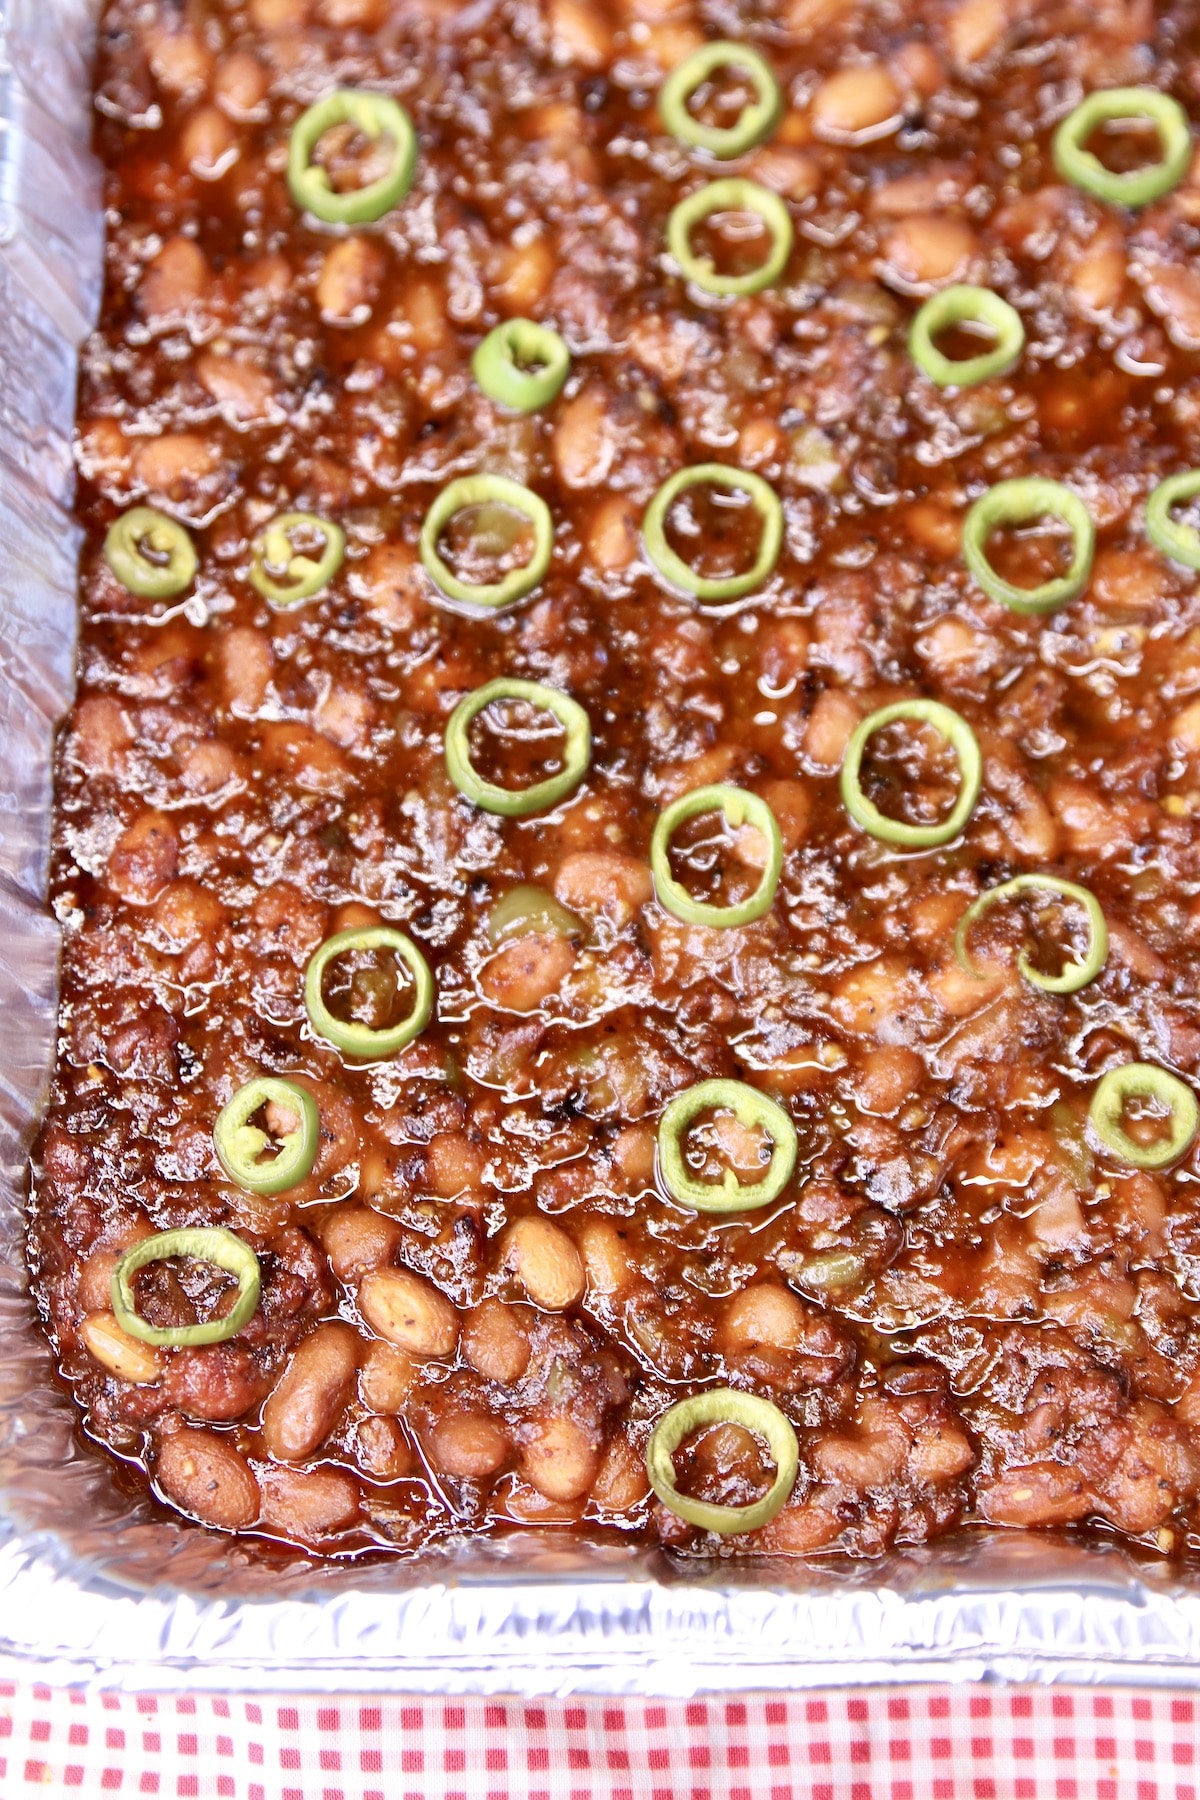 Closeup of pan of baked beans.